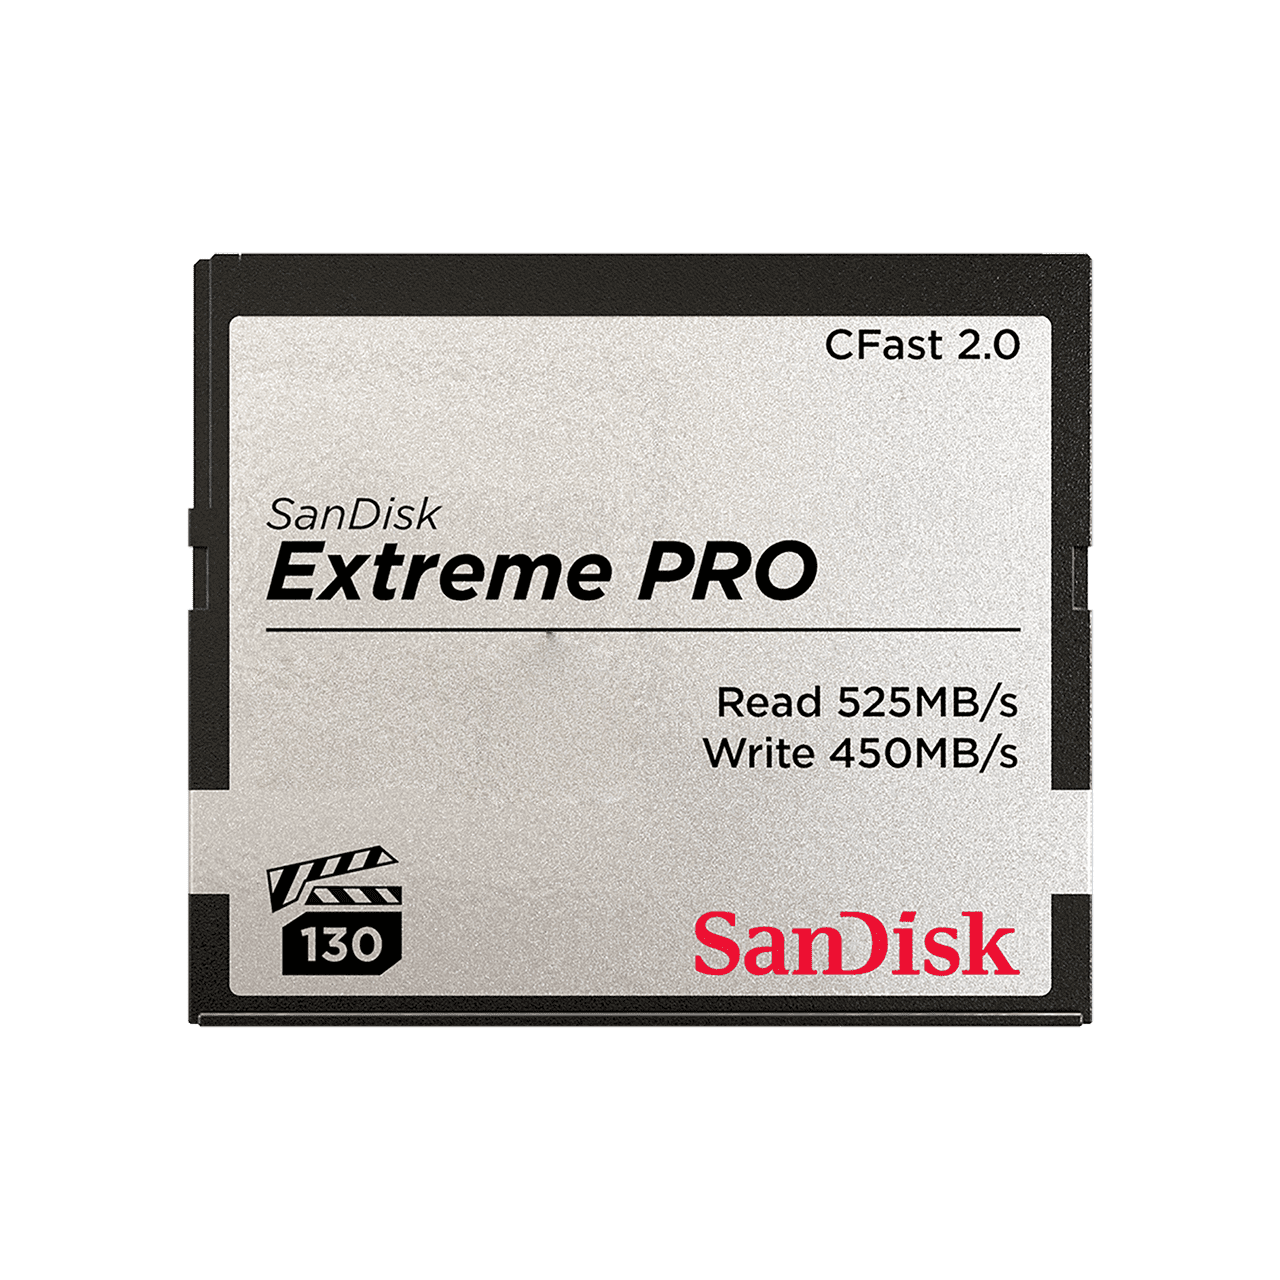 SANDISK Extreme PRO® CFAST™2.0 CF CARD (SDCFSP)